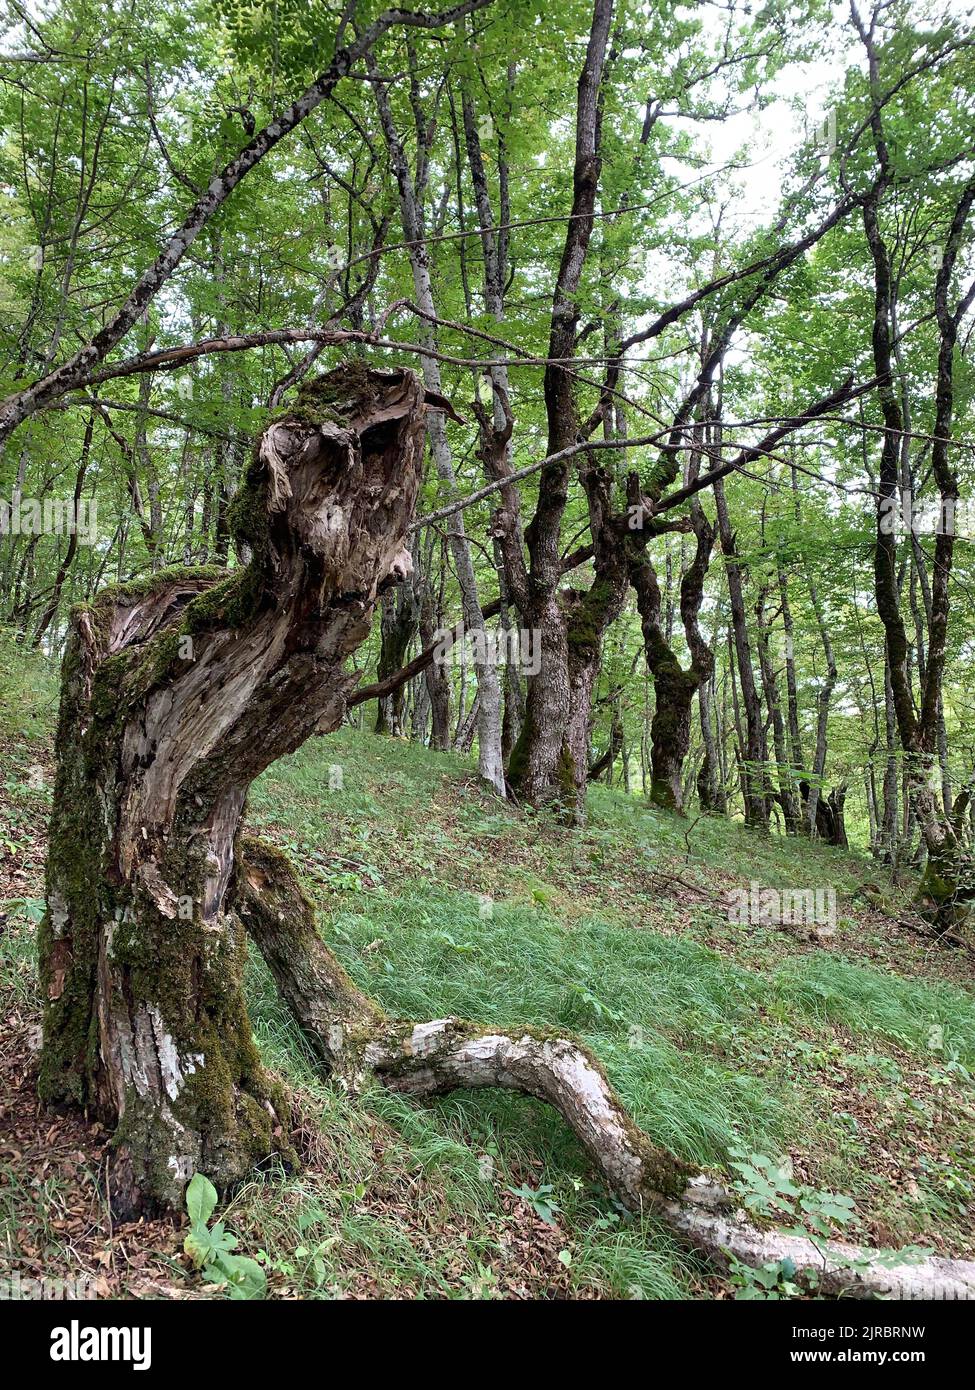 Waldreservat Perućica im Nationalpark Sutjeska, Bosnien und Herzegowina. Einer der letzten Urwälder Europas, UNESCO-Weltkulturerbe. Stockfoto